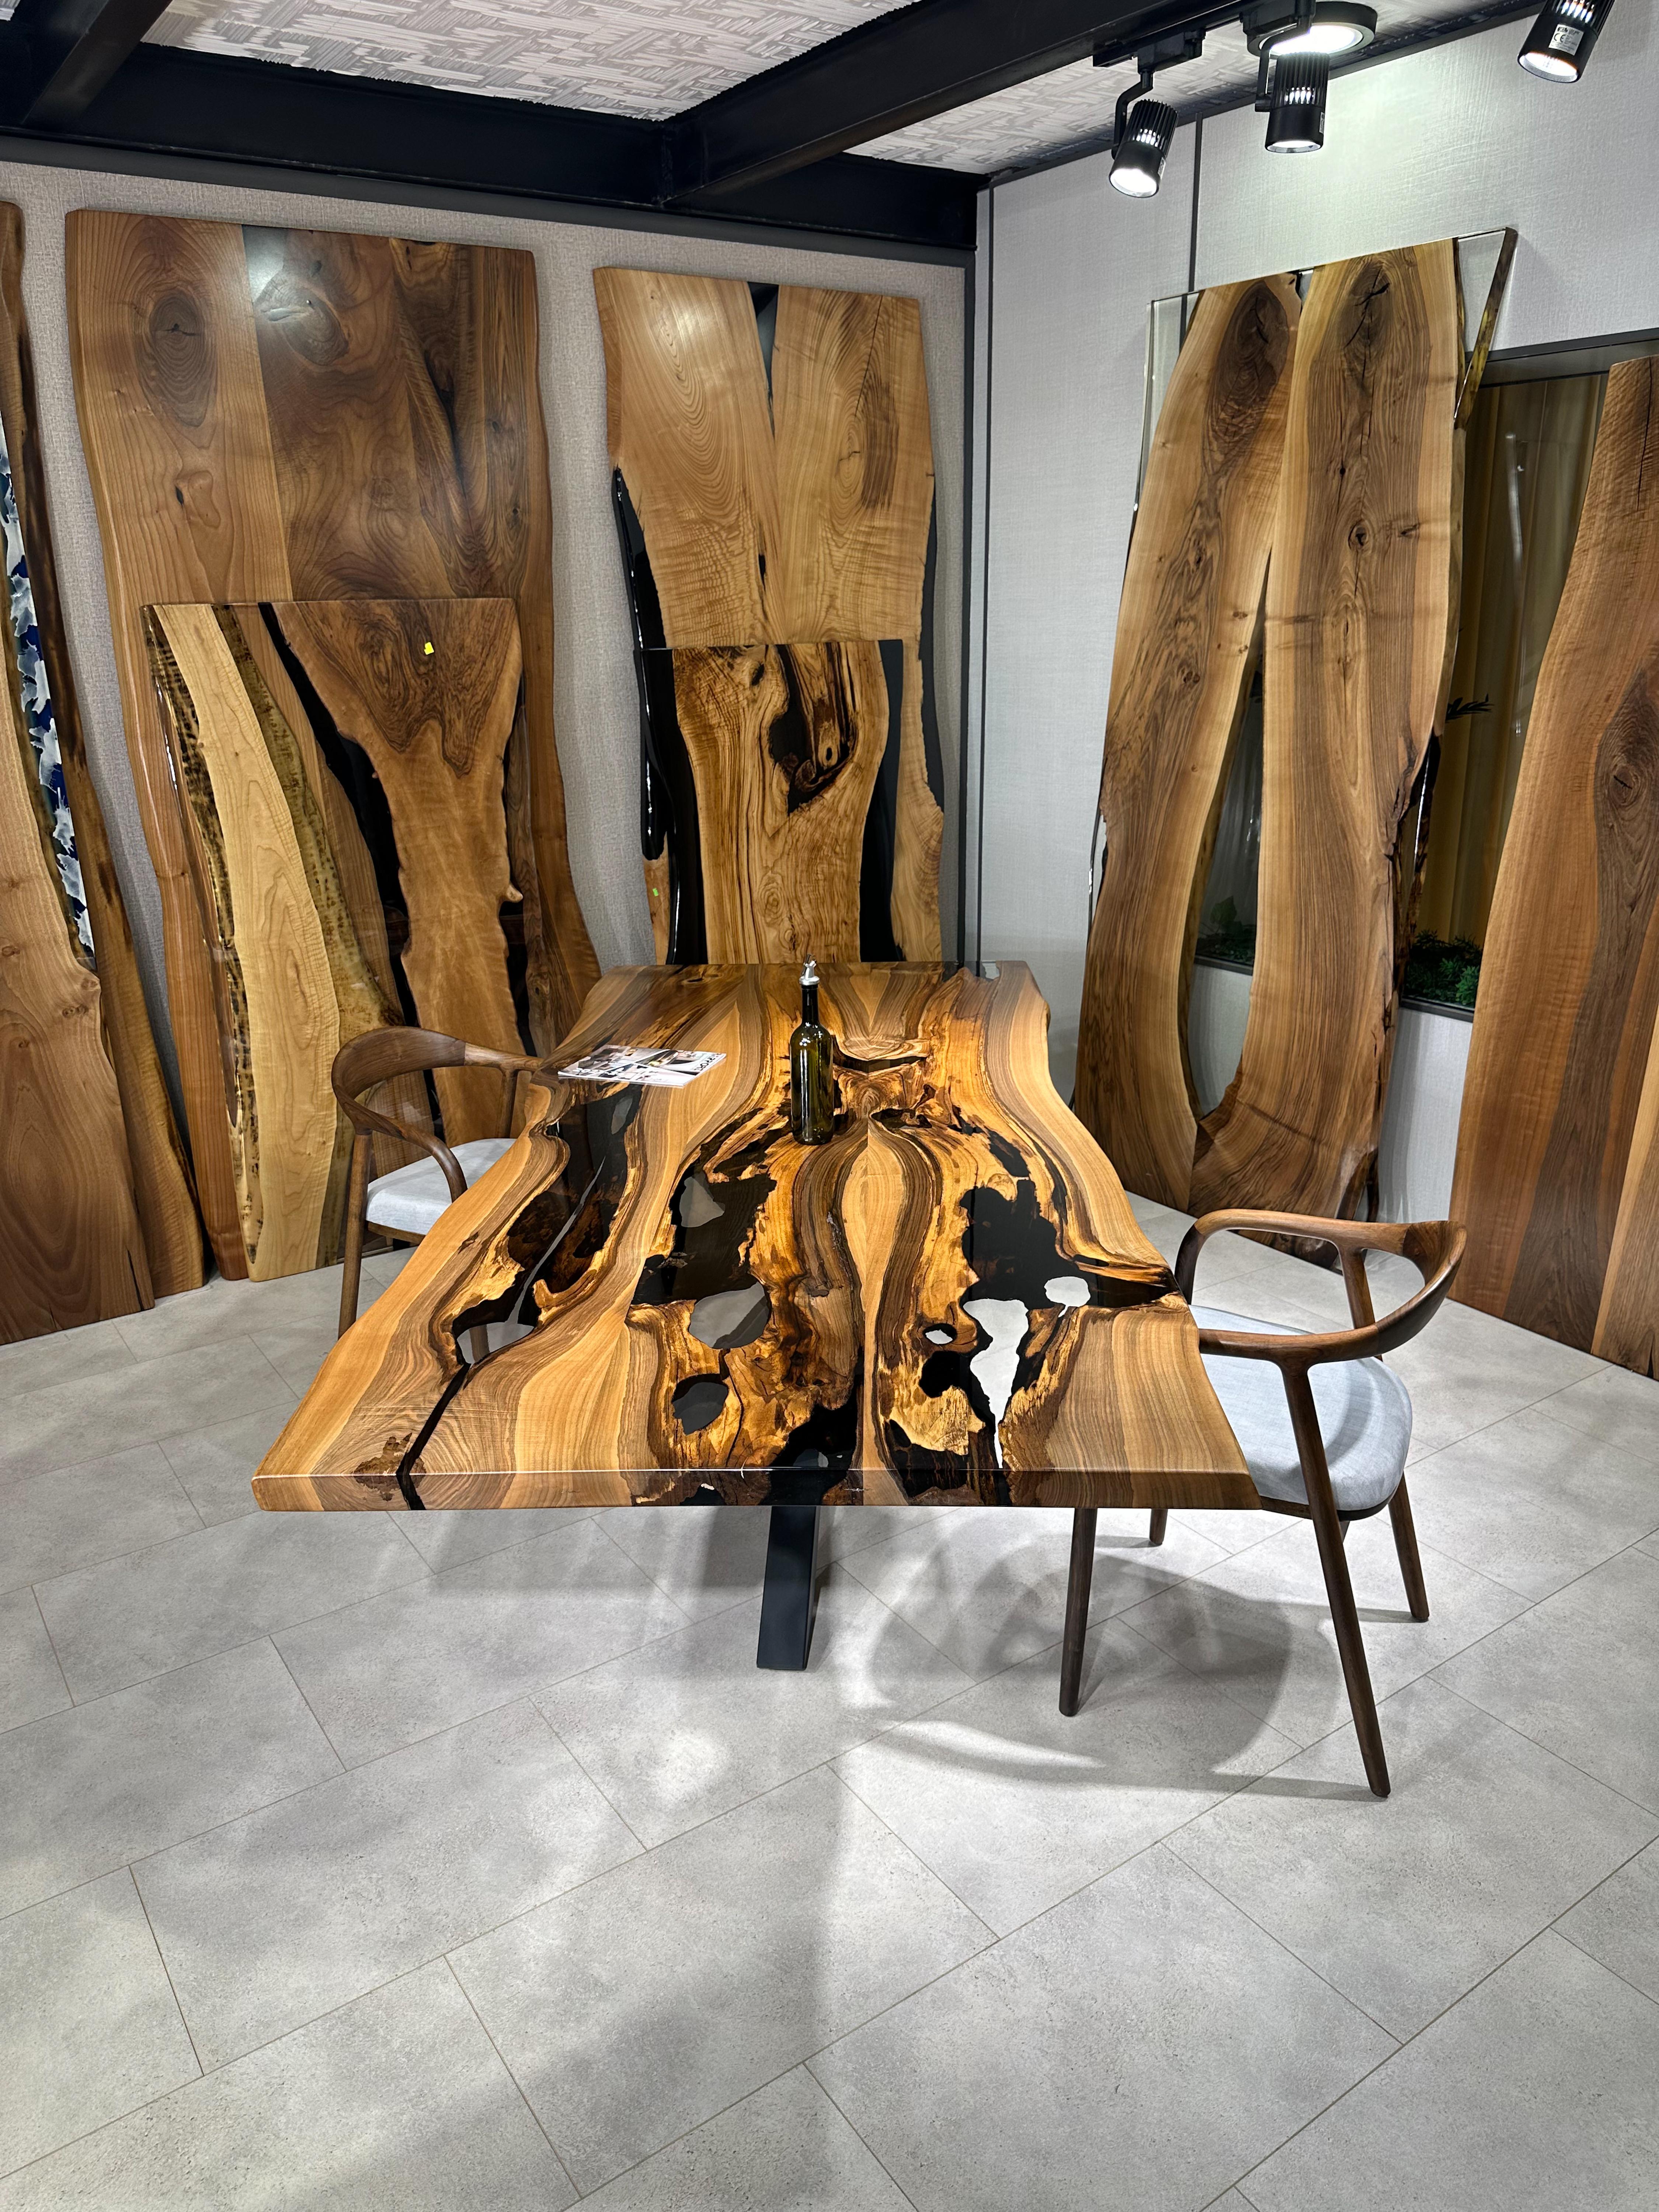 Table de salle à manger en noyer à bord vif en résine époxy transparente 

Cette table est fabriquée en bois de noyer vieux de 500 ans. Les veines et la texture du bois décrivent l'aspect d'un bois de noyer naturel.
Elle peut être utilisée comme